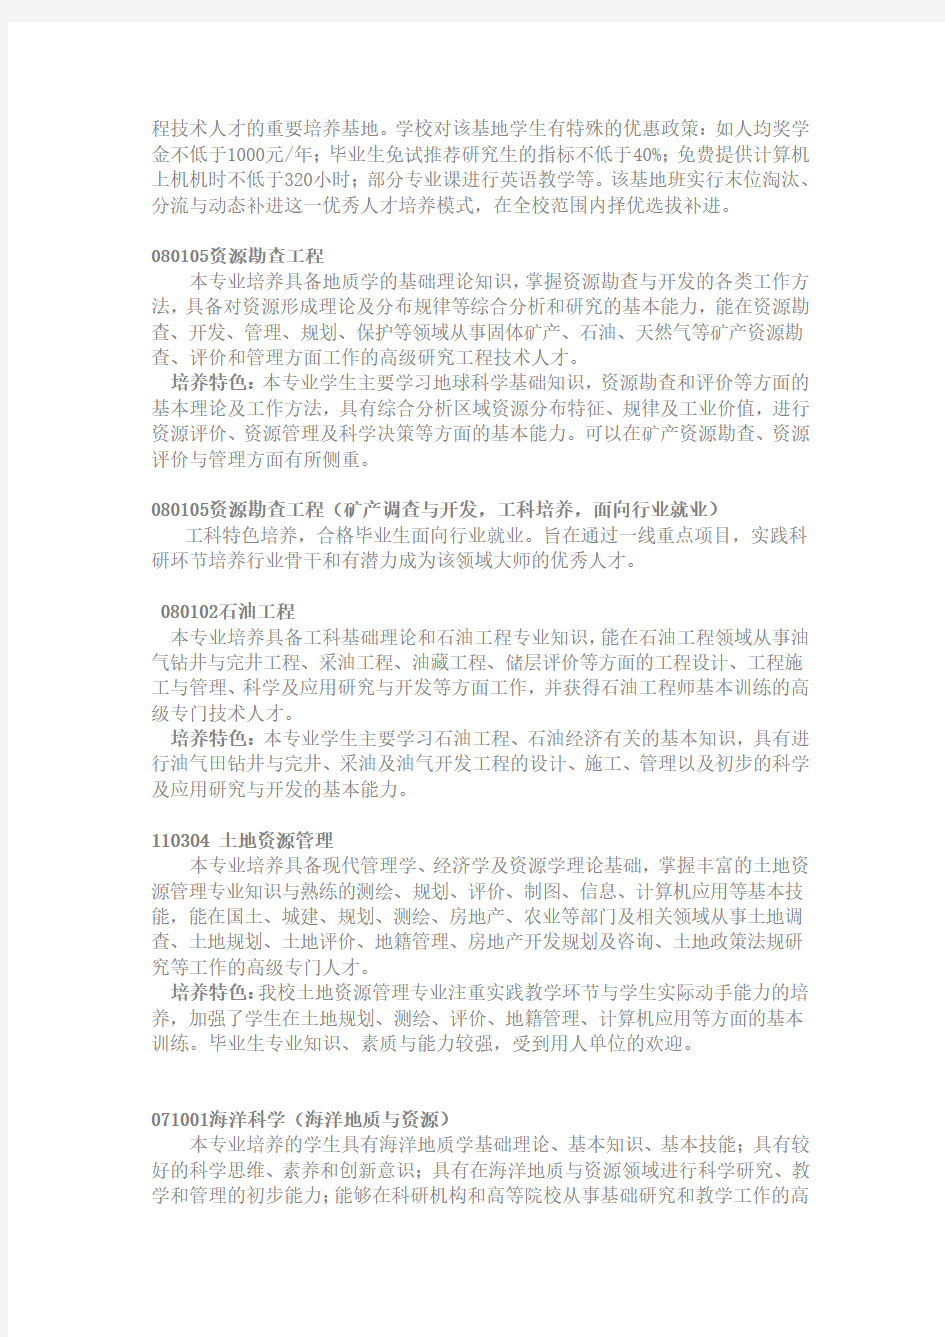 23中国地质大学(武汉)五大院系简介及20092011年分省录取分数统计